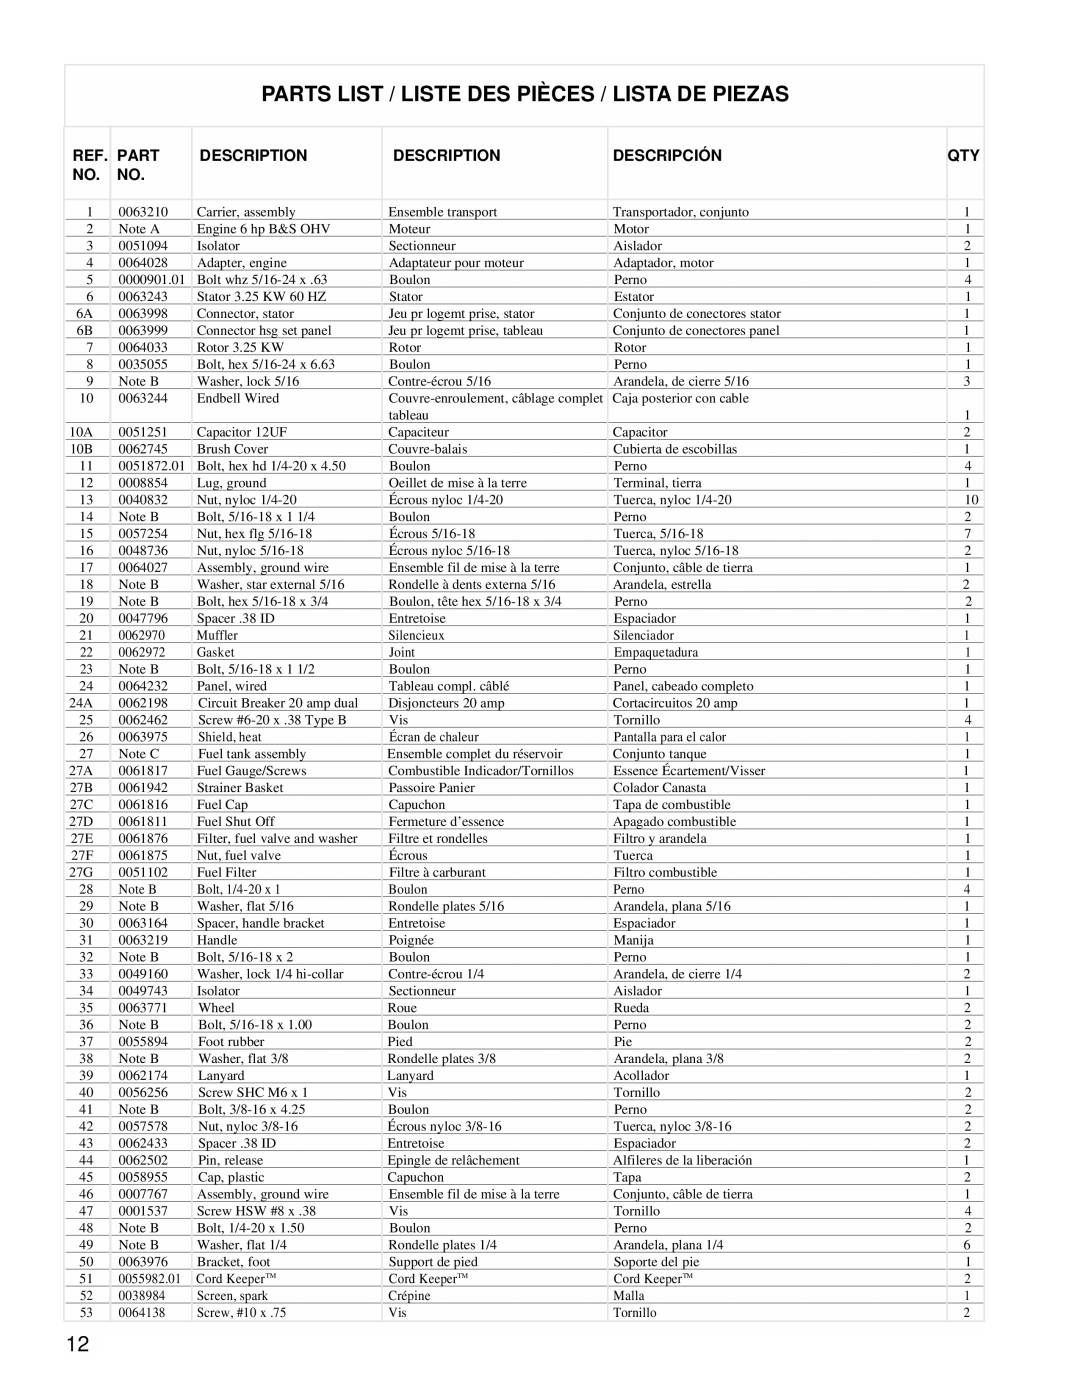 Powermate PMC543250 manual Parts List / Liste Des Pièces / Lista De Piezas, Description, Descripción 